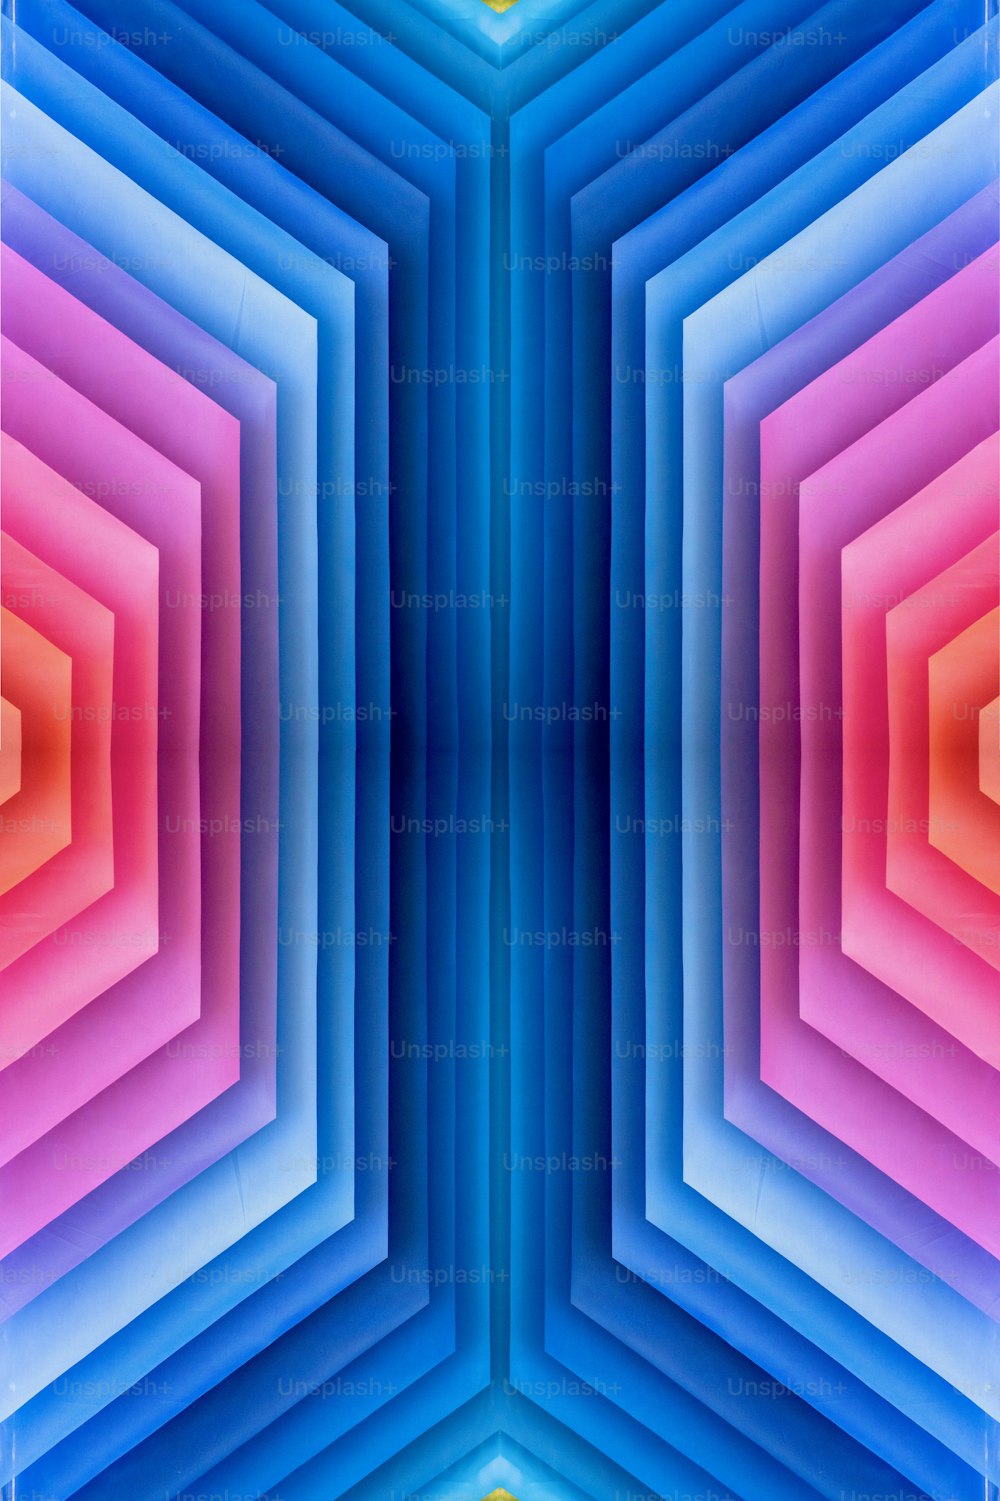 Une image abstraite d’une structure hexagonale multicolore